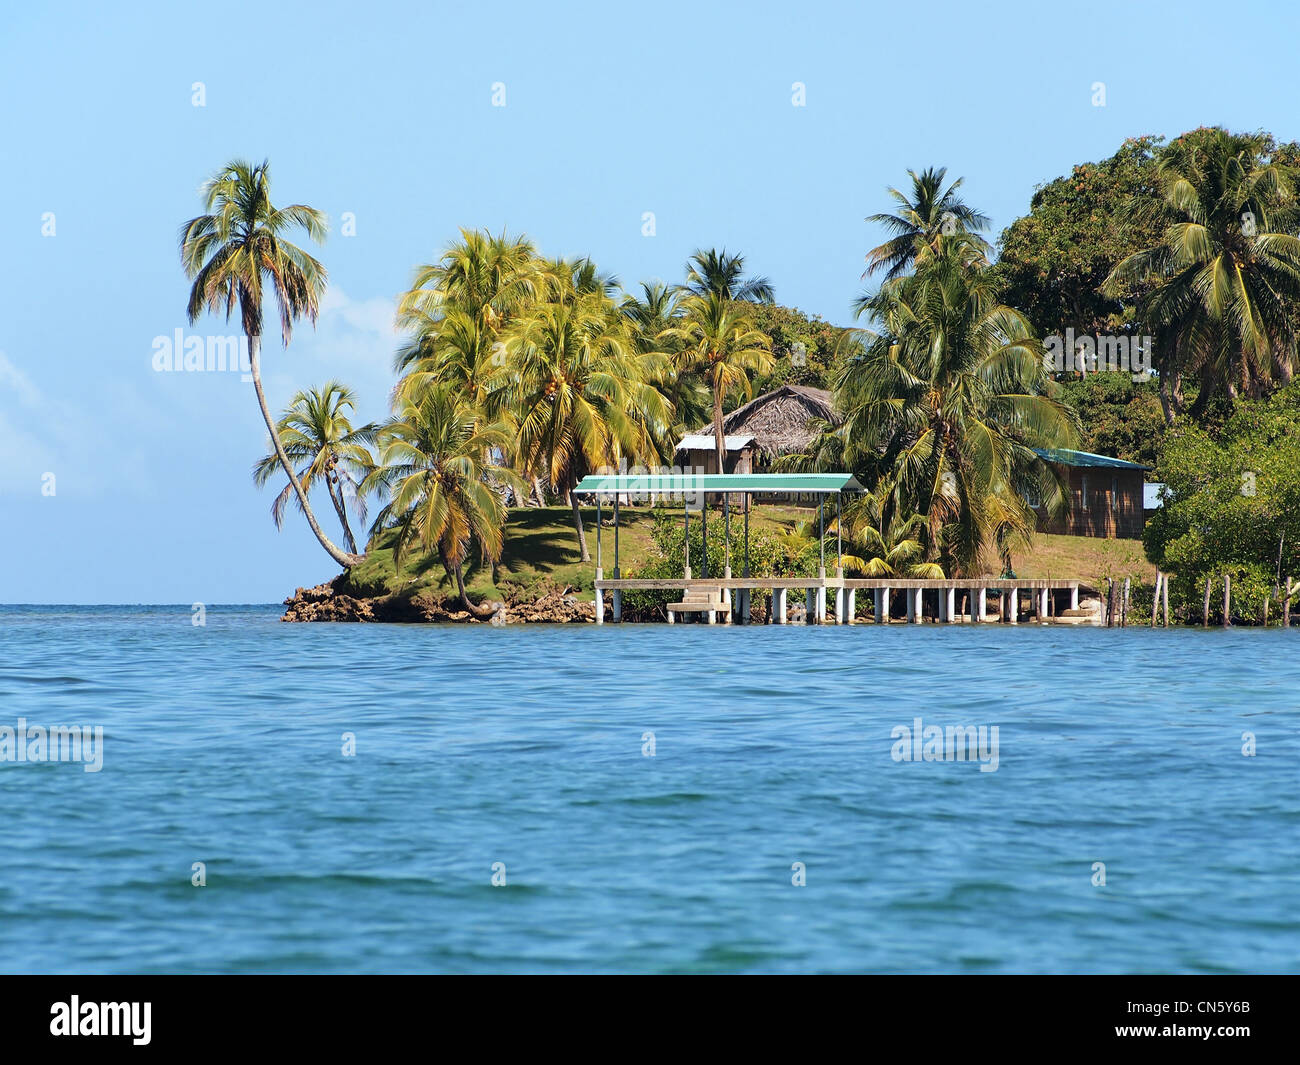 Tropische Insel mit Palmen und ein Dock, führt zu einem kleinen Dorf, Mittelamerika, Archipel Bocas del Toro, Panama Stockfoto